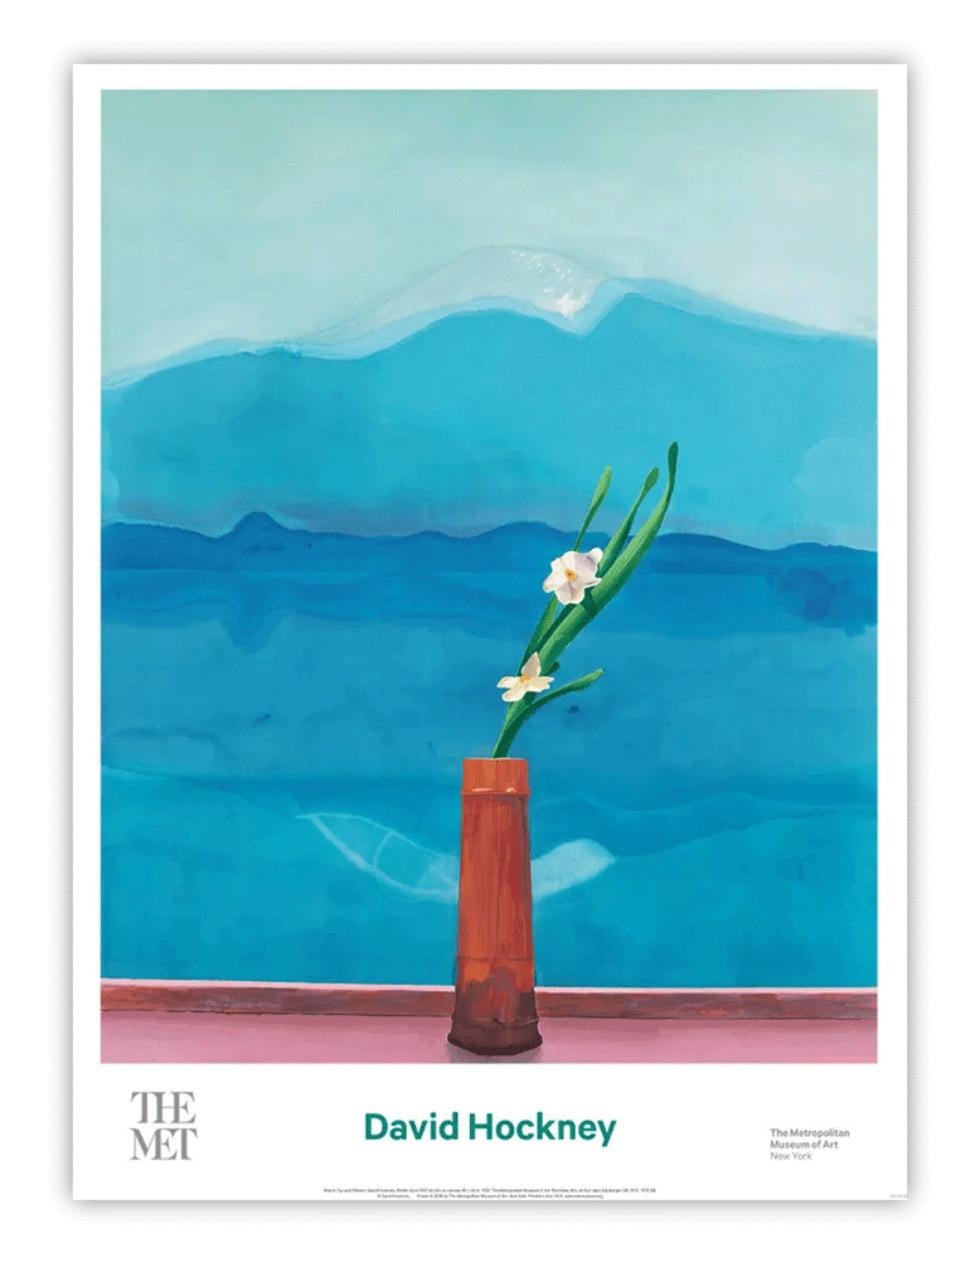 David Hockney, Mont Fuji et fleurs, 2016

Lithographie offset

63.5 x 86.5 cm

Affiche originale produite par le MET présentant la peinture de Hockney intitulée Mont Fuji et fleurs (1972)

Certificat d'authenticité délivré par la galerie